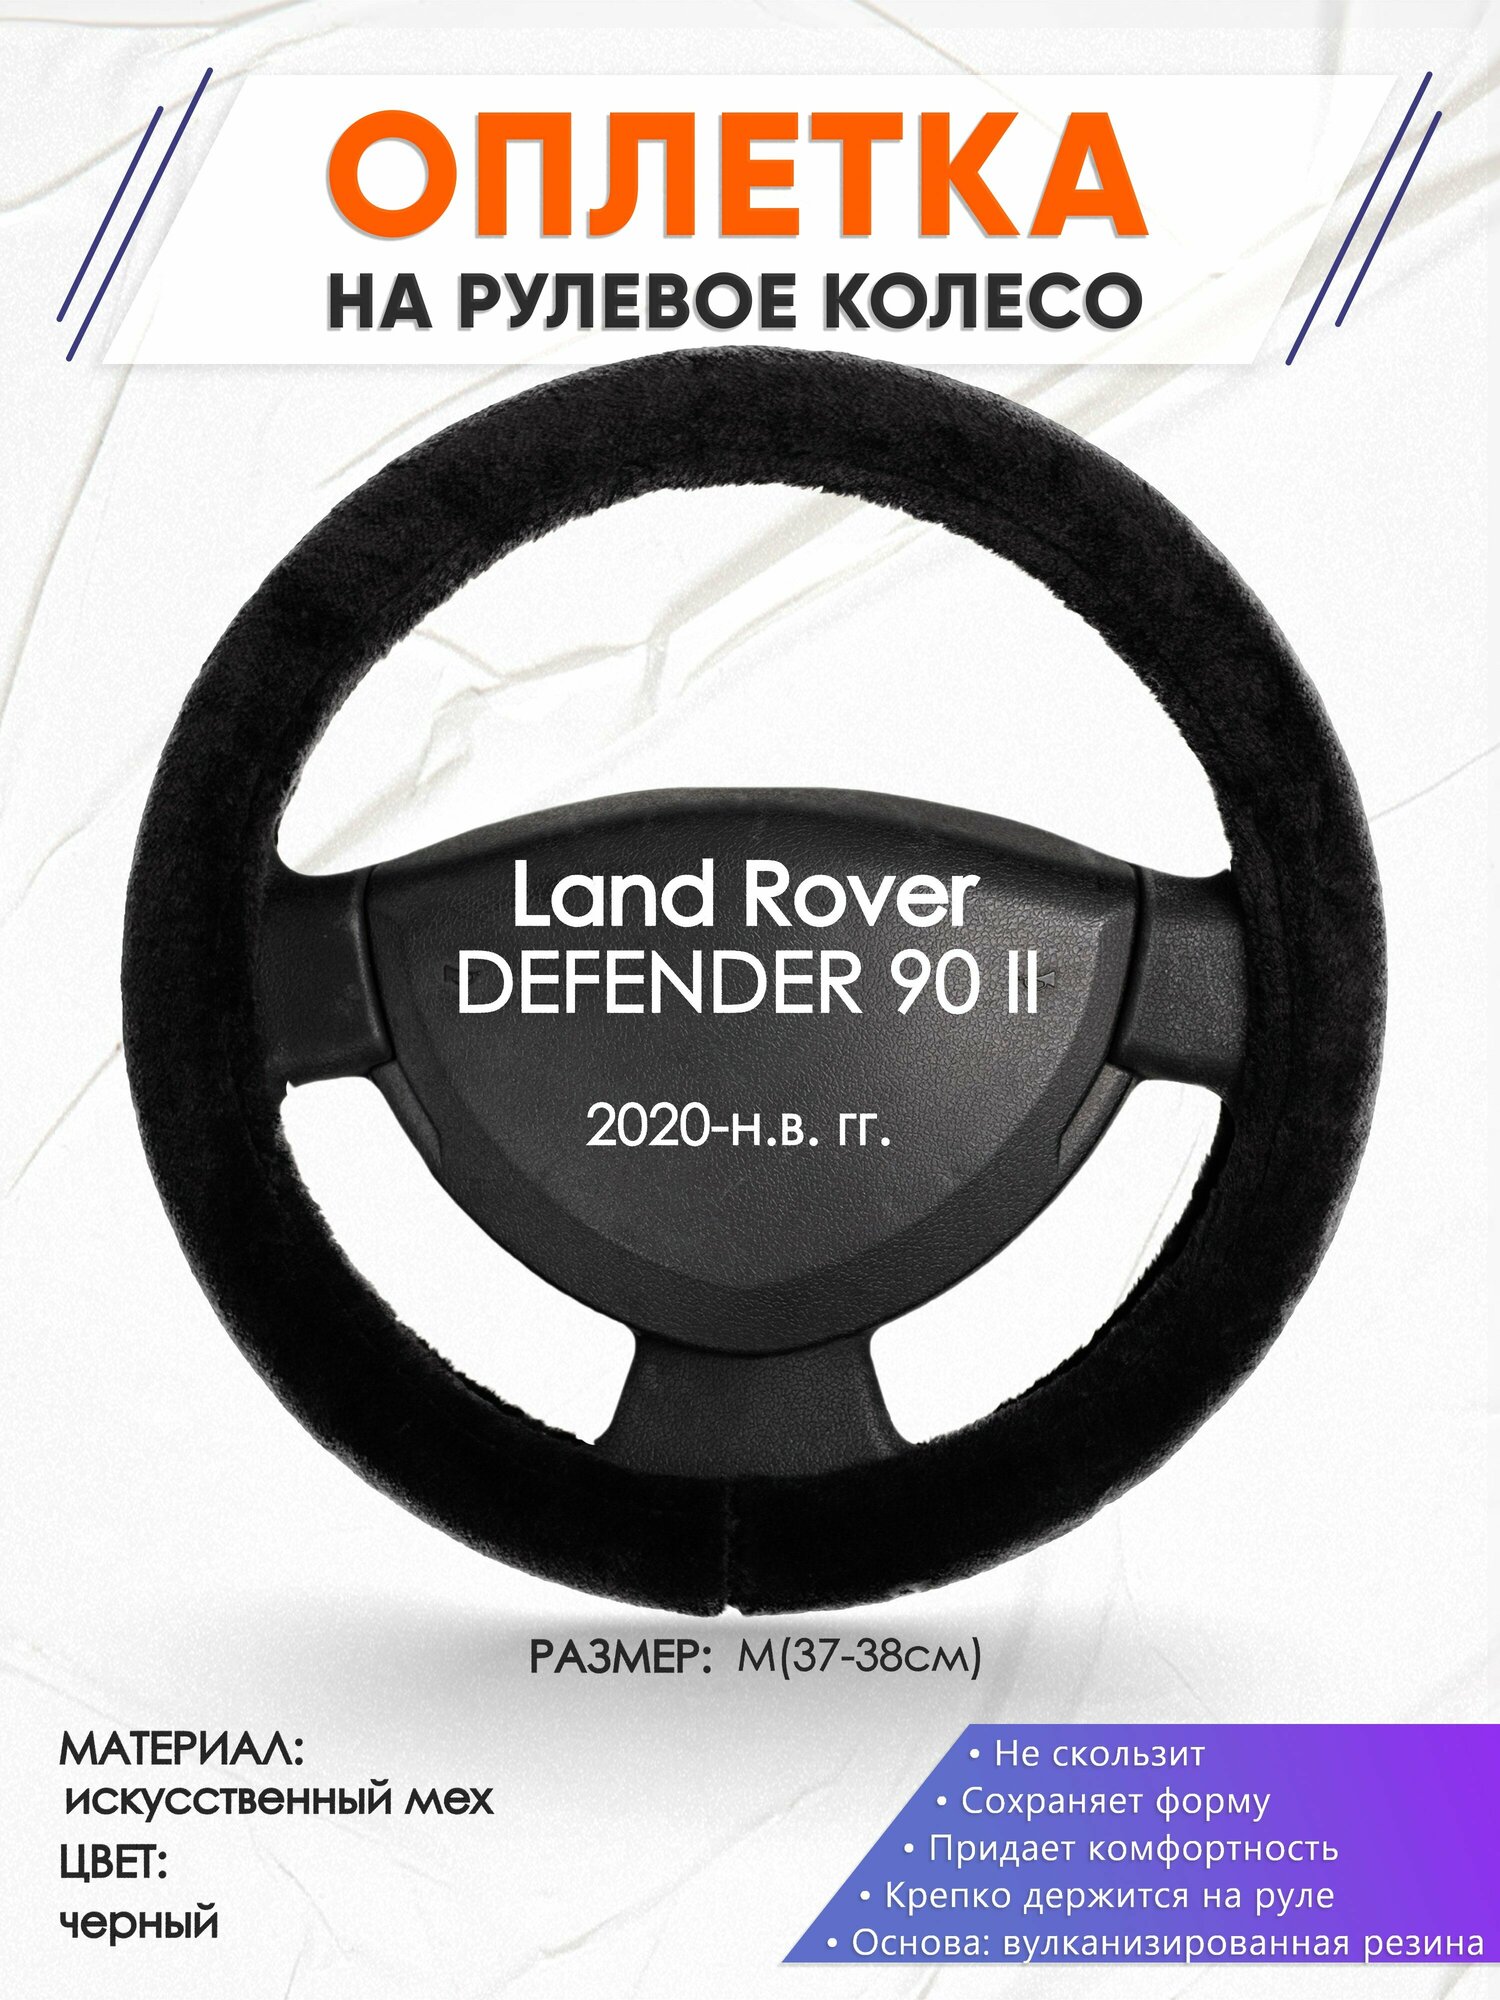 Оплетка наруль для Land Rover DEFENDER 90 2(Ленд Ровер Дефендер 90) 2020-н. в. годов выпуска, размер M(37-38см), Искусственный мех 45